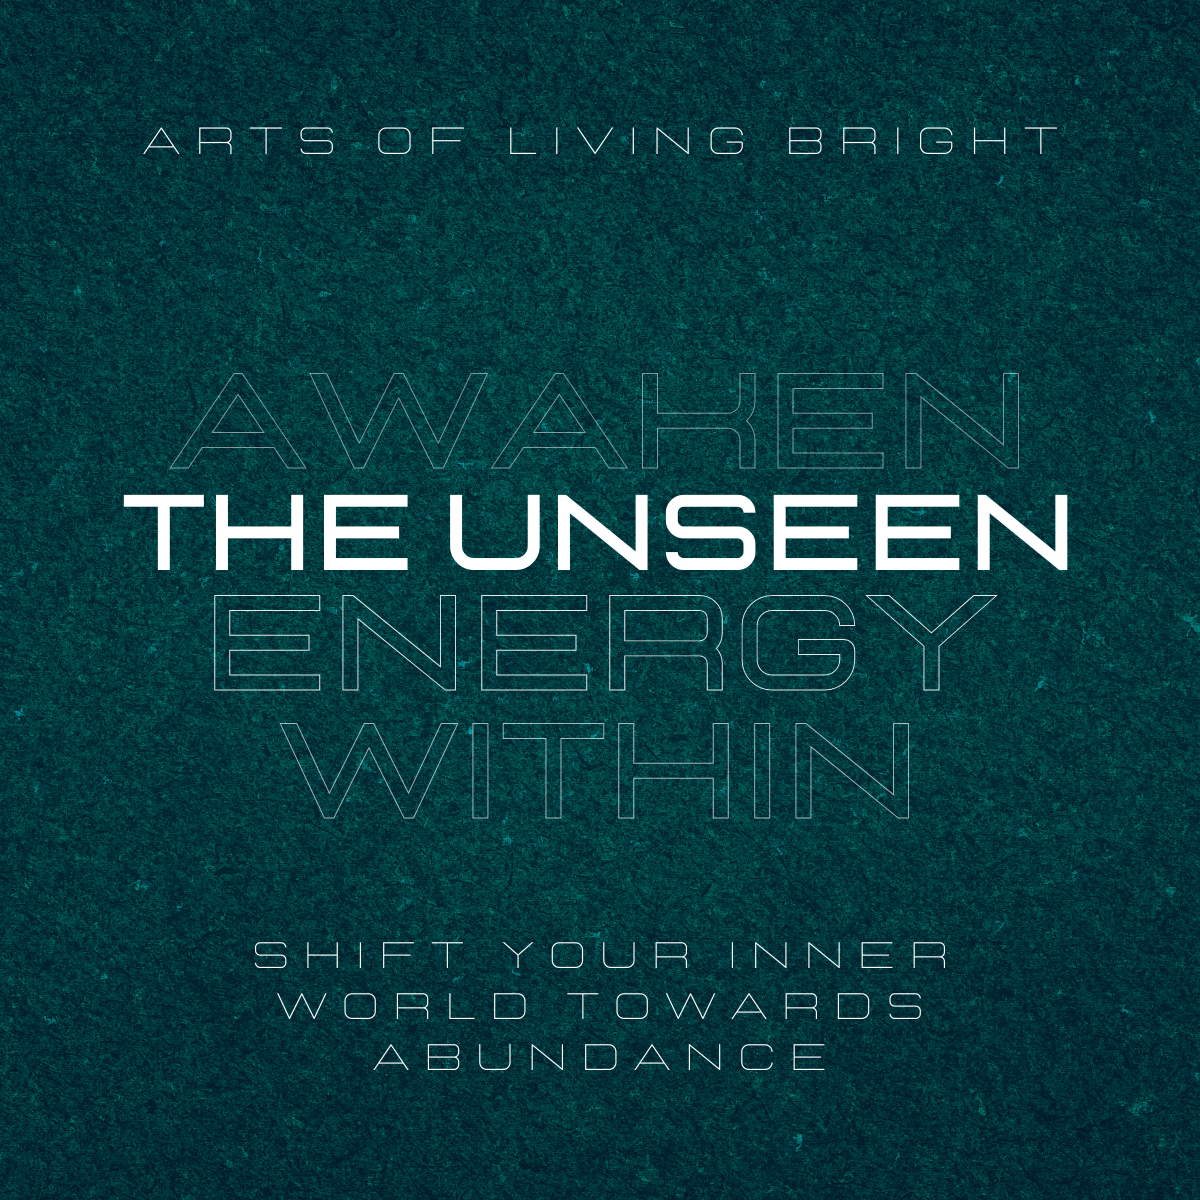 Awaken the Unseen Energy Within